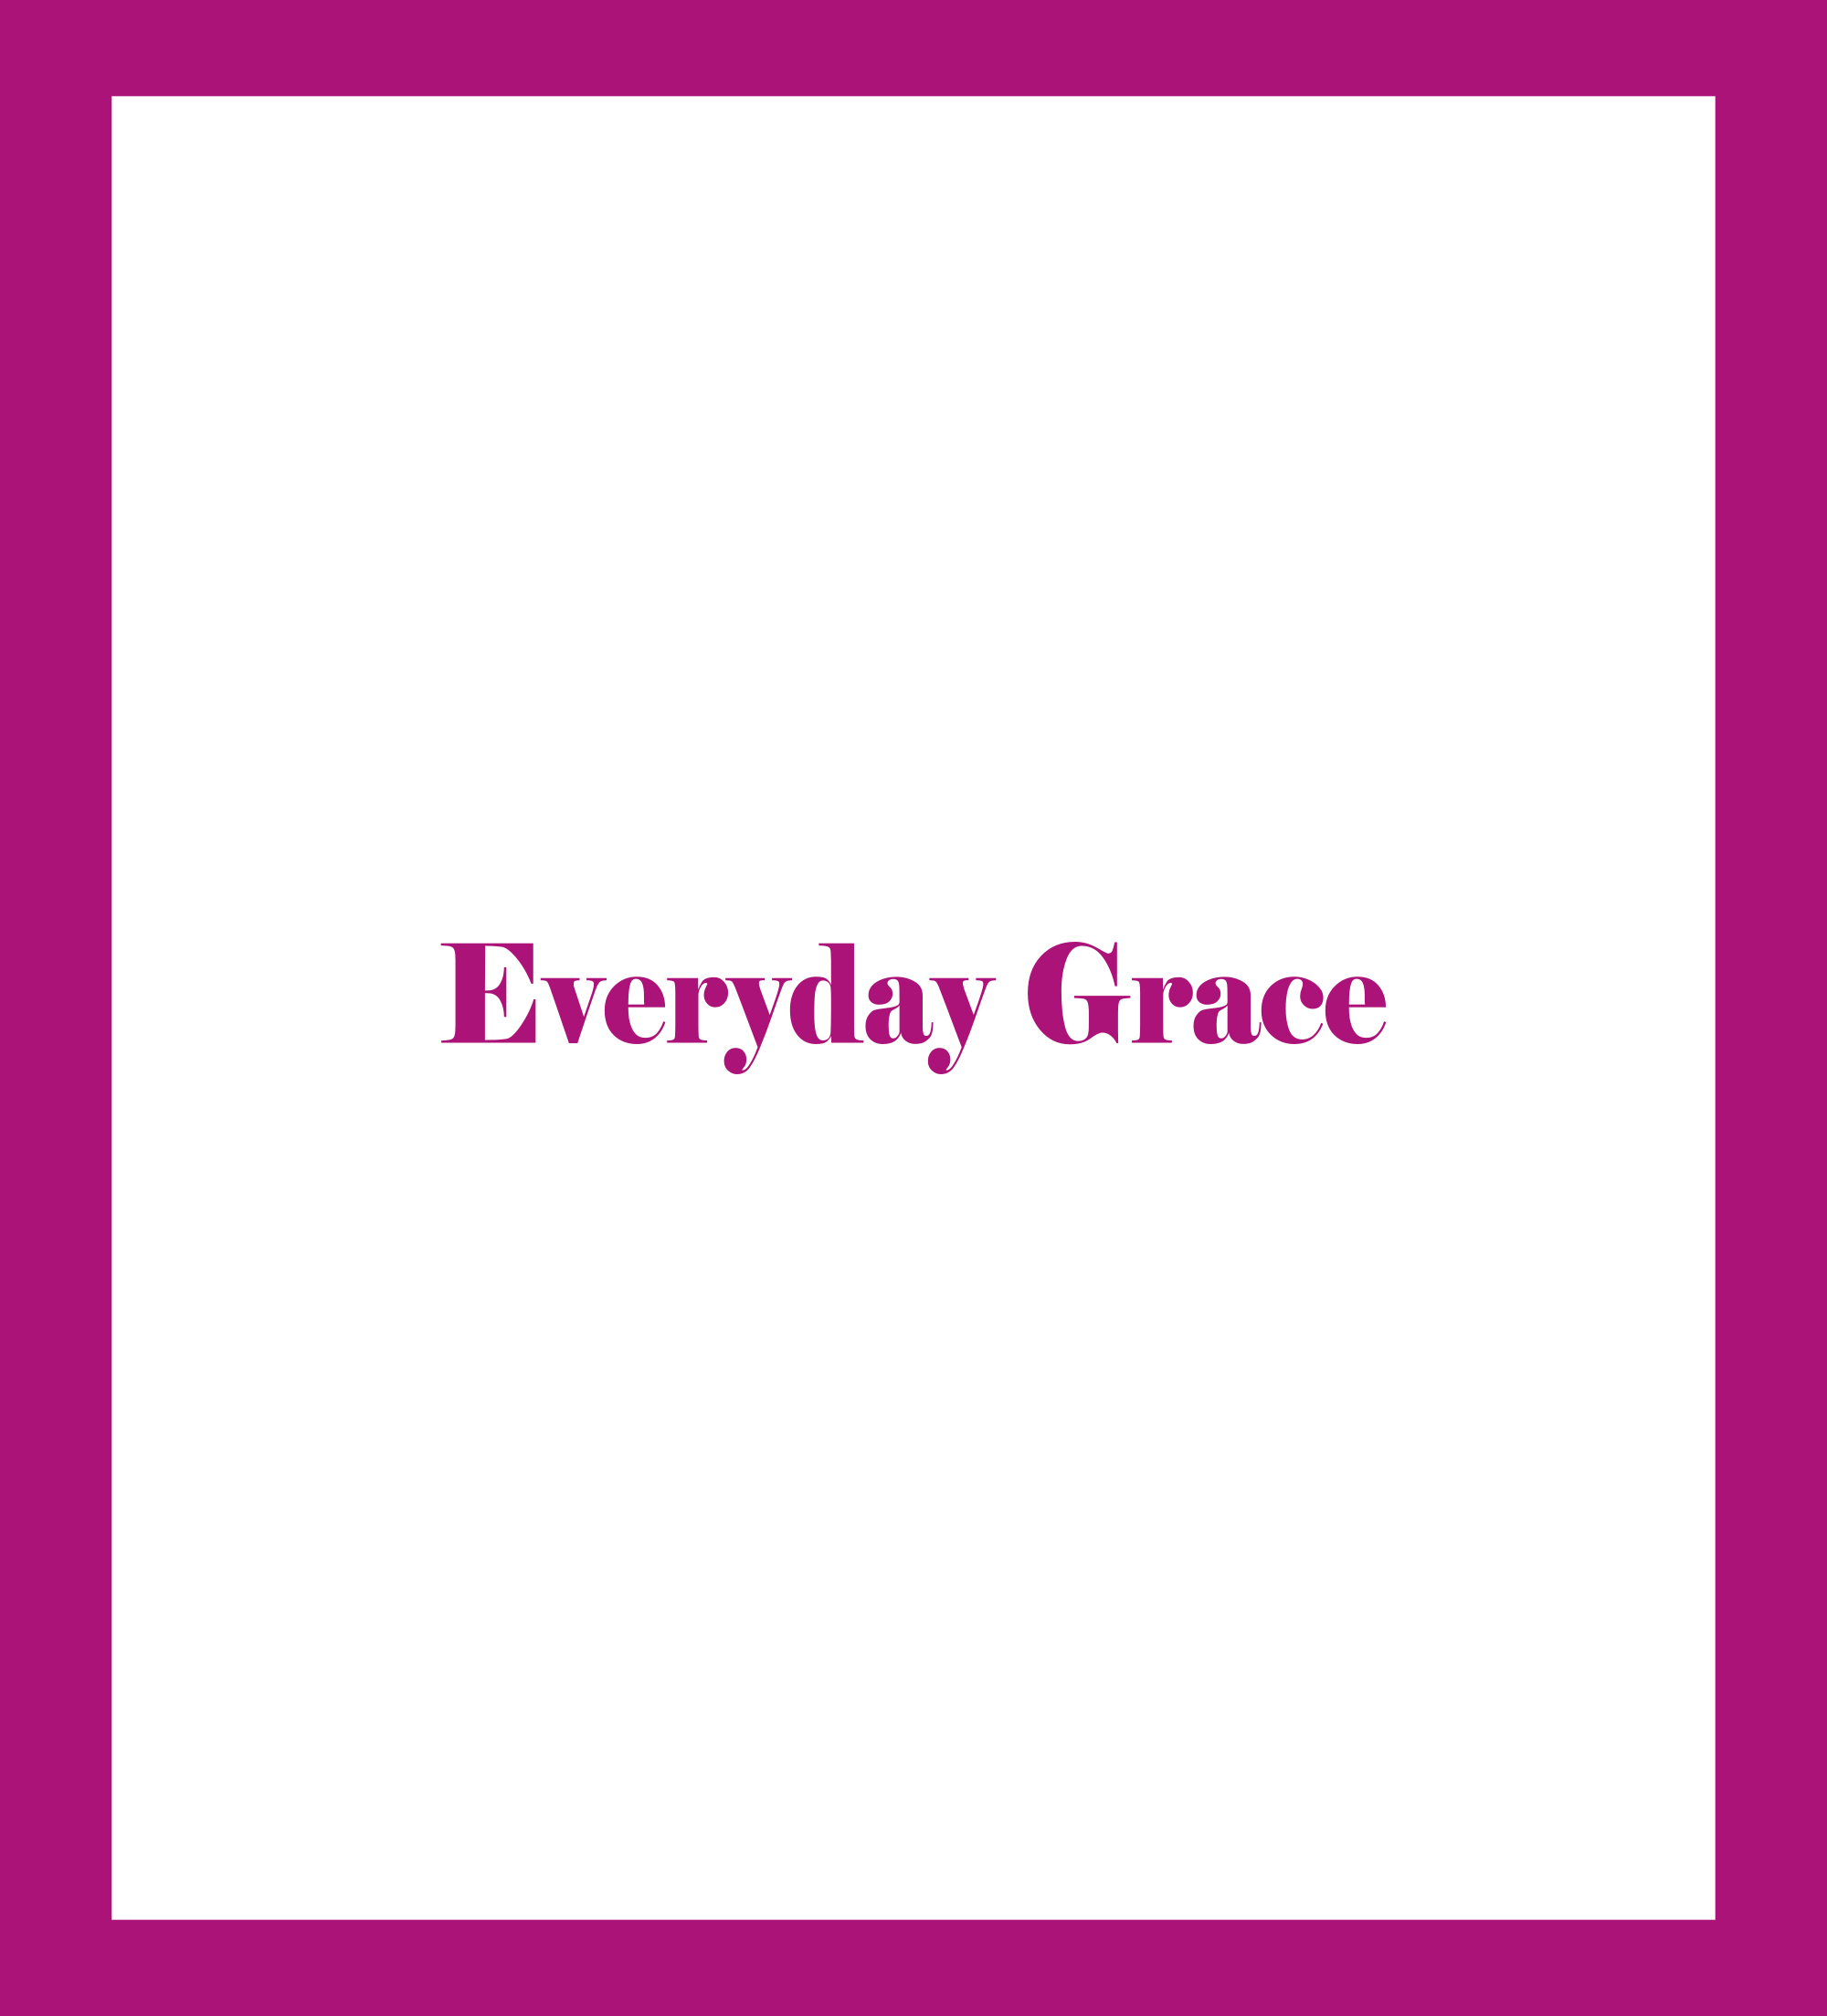 Caratula de Everyday Grace (Espera un milagro cada día) 